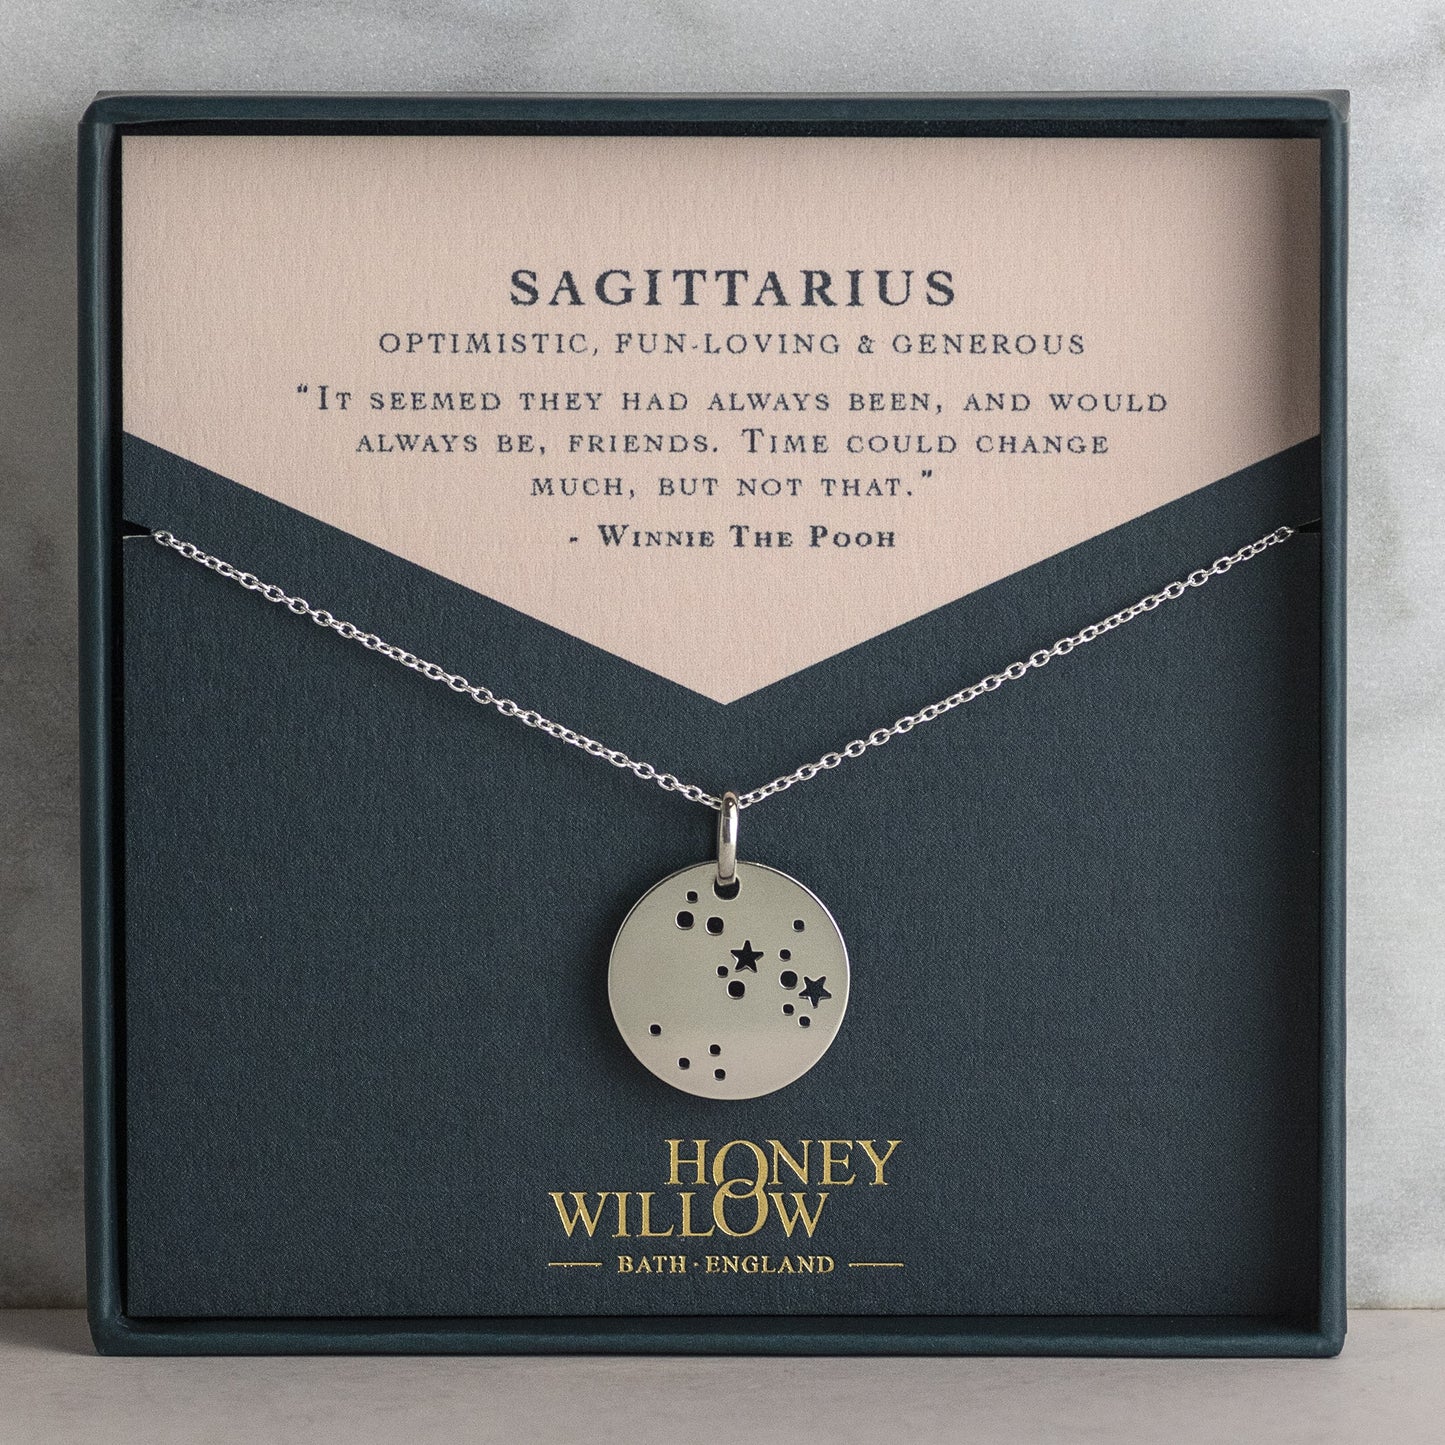 Aquarius Constellation Necklace